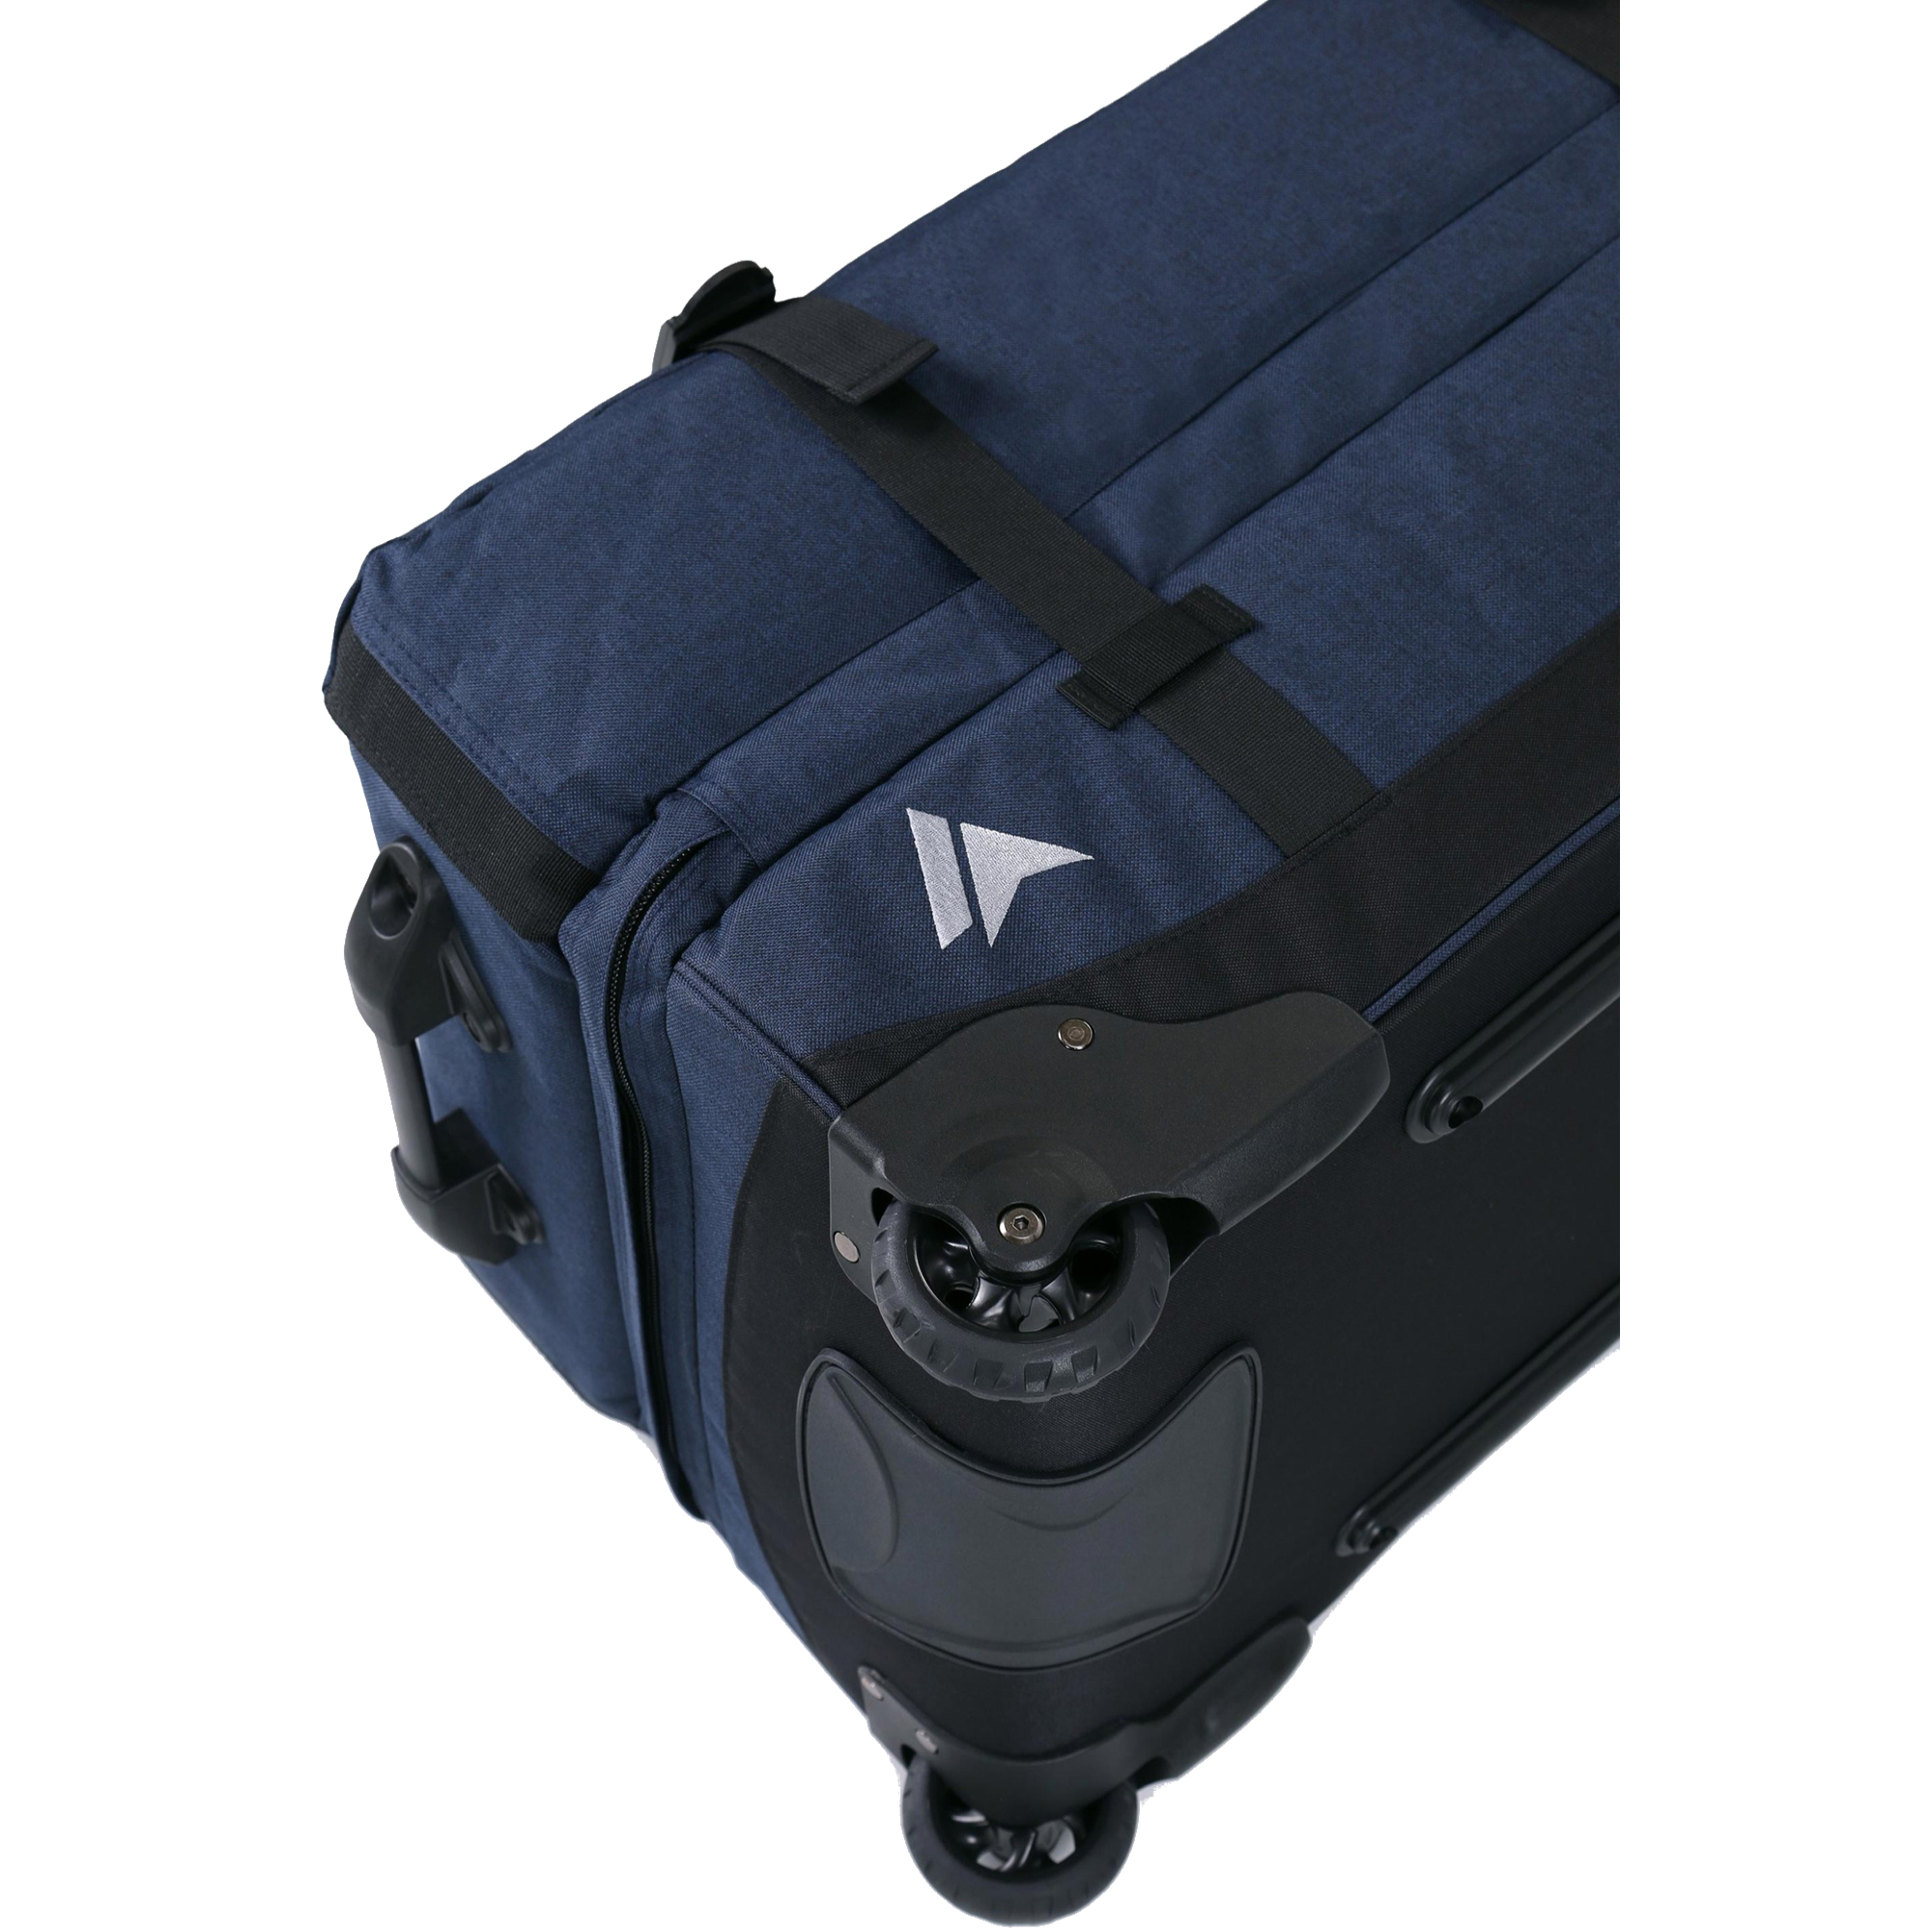 Surfanic Maxim 2.0 100 Wheeled Luggage Bag